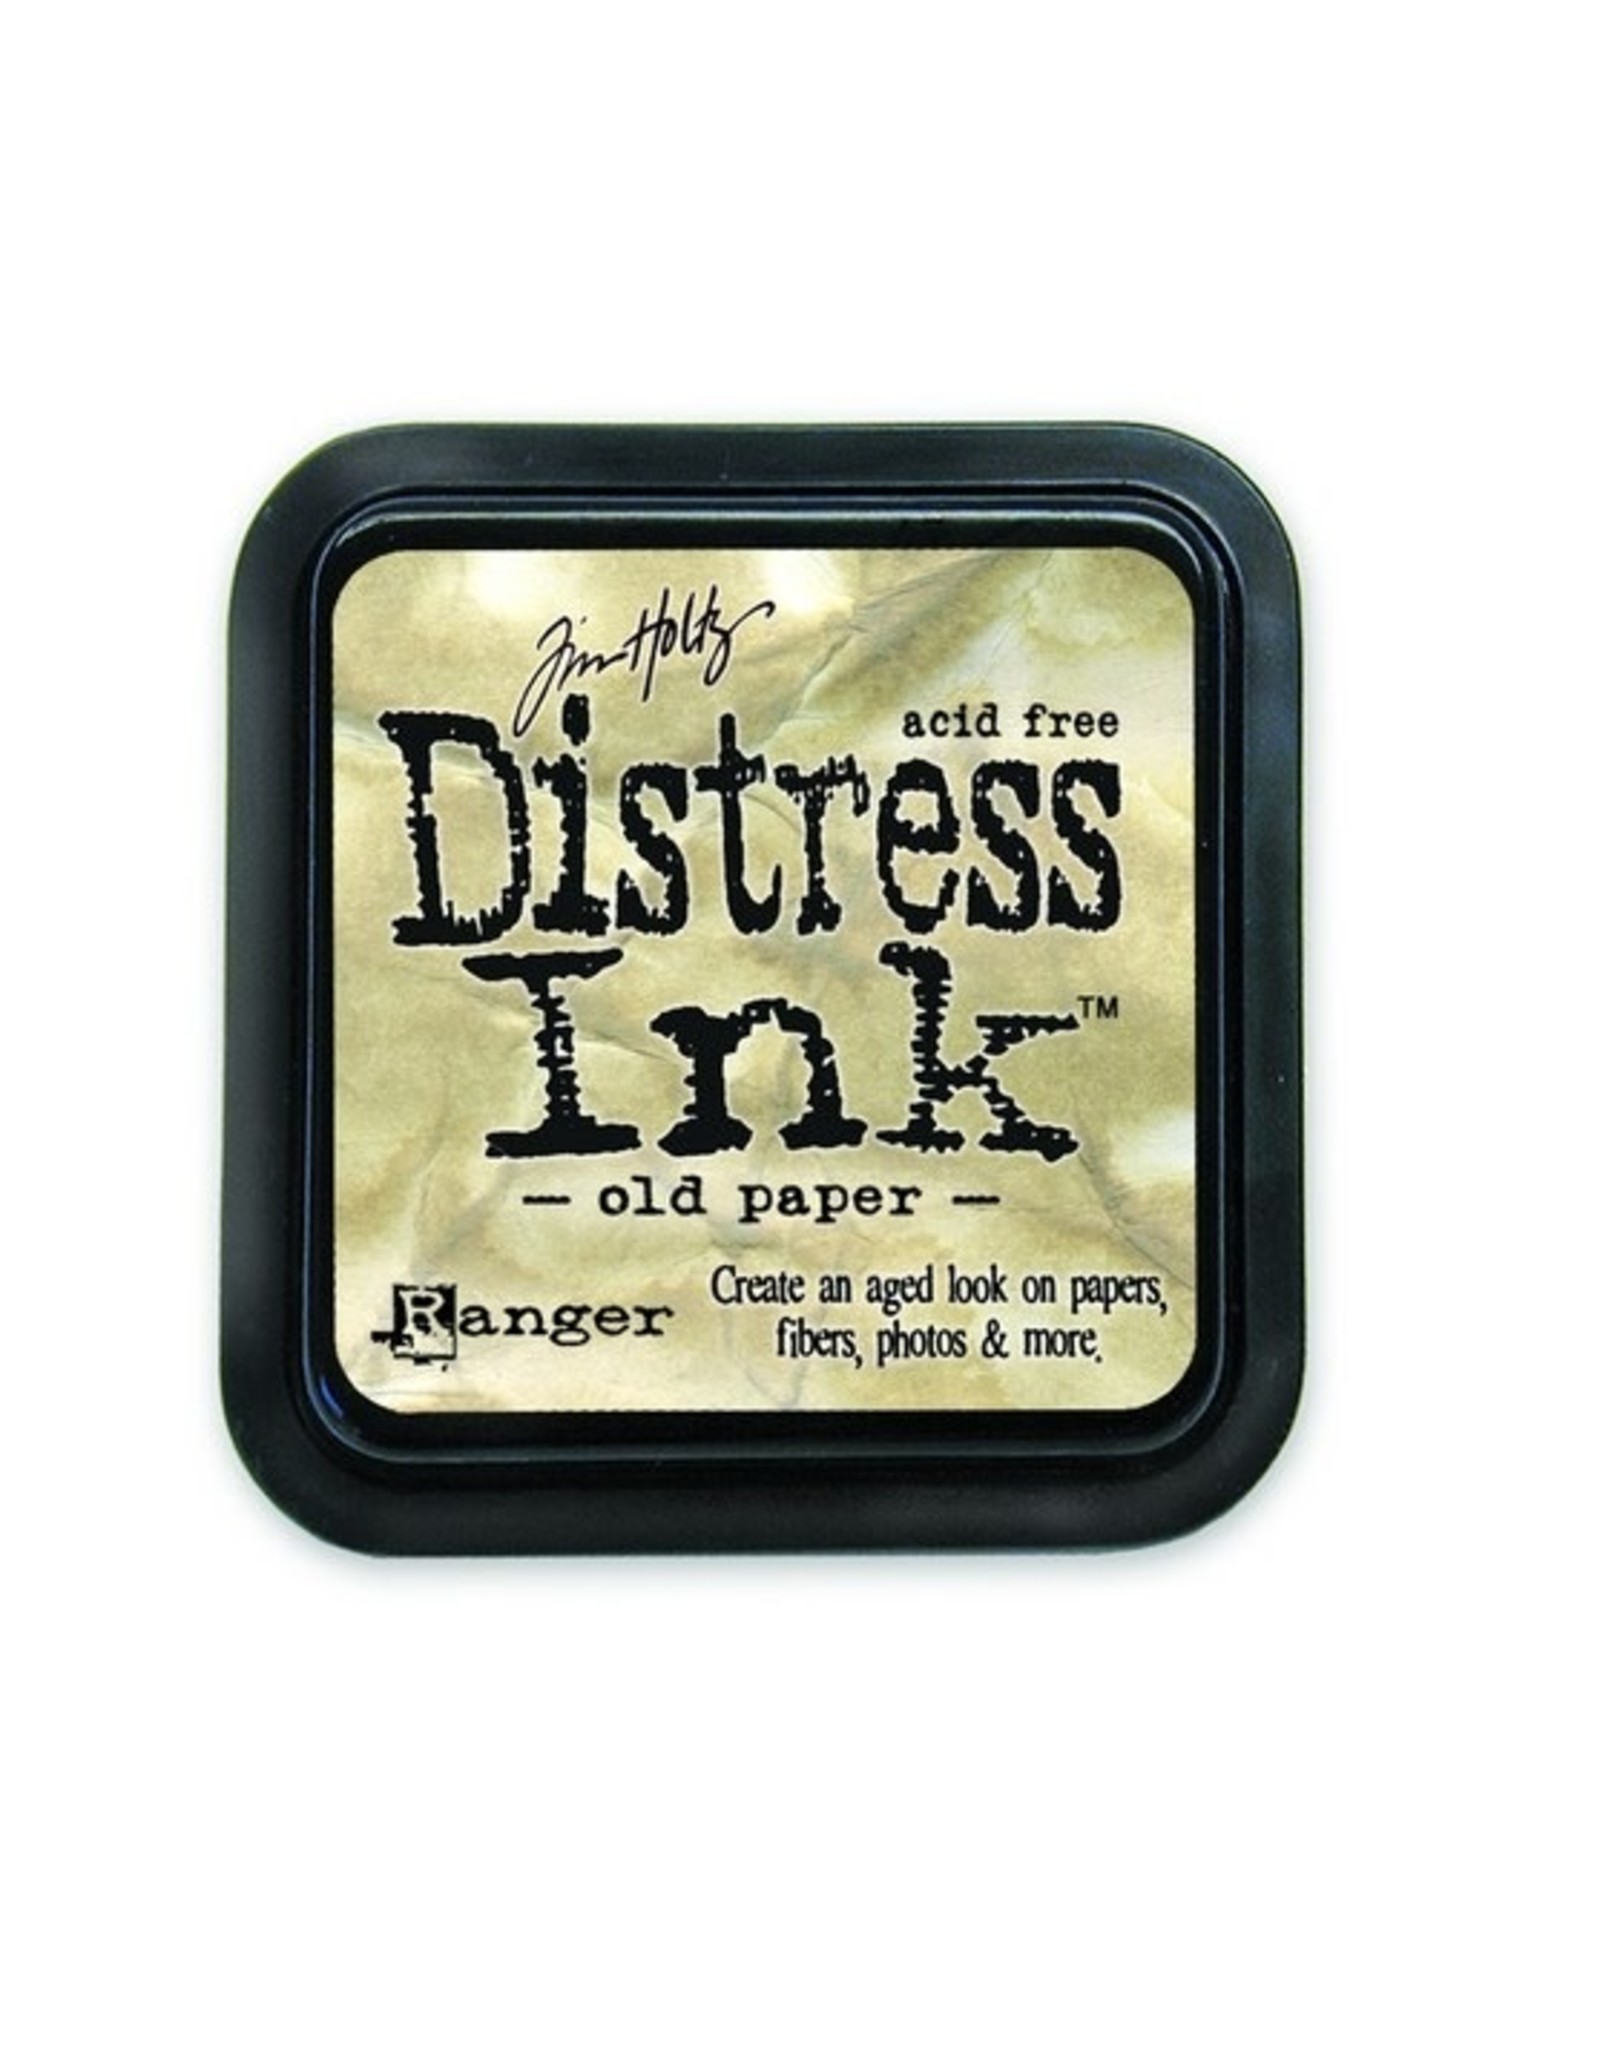 Tim Holtz - Ranger Distress Ink Old Paper